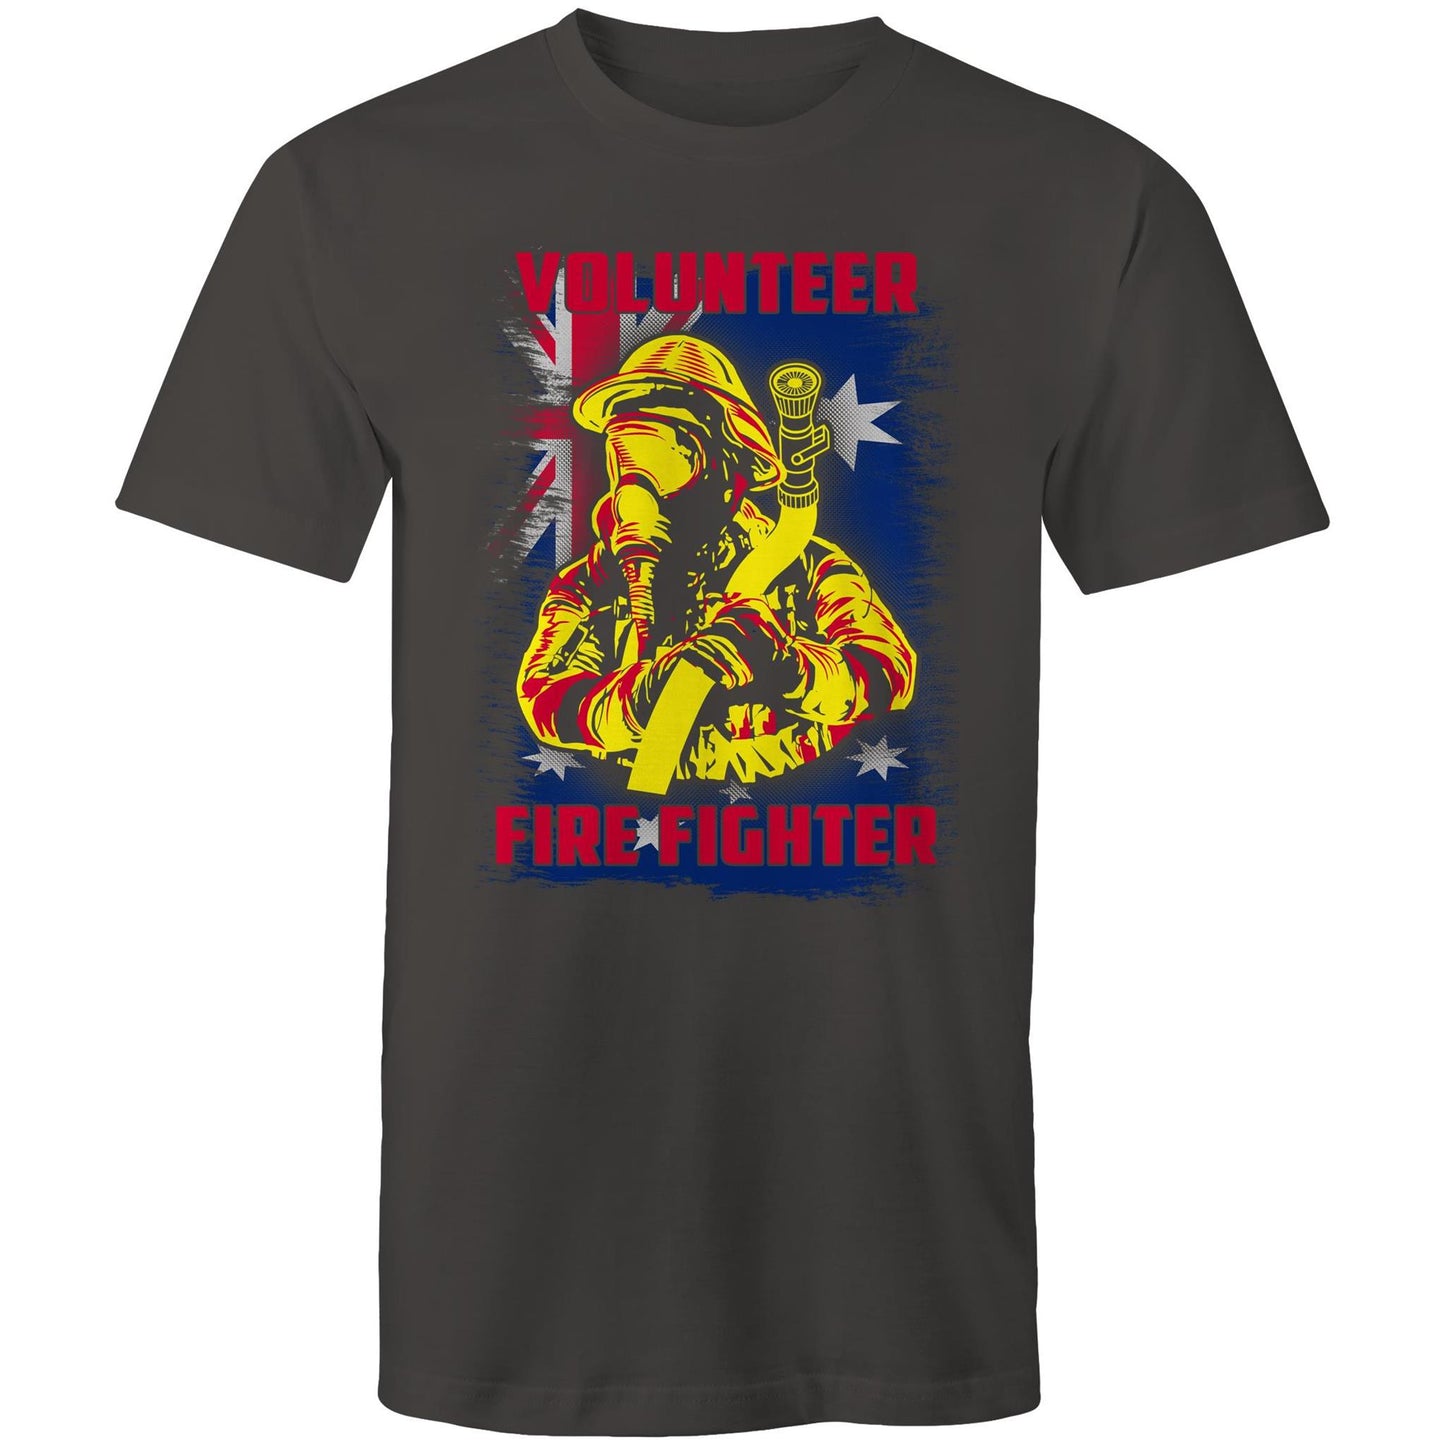 VOLUNTEER FIREFIGHTER Mens T-Shirt